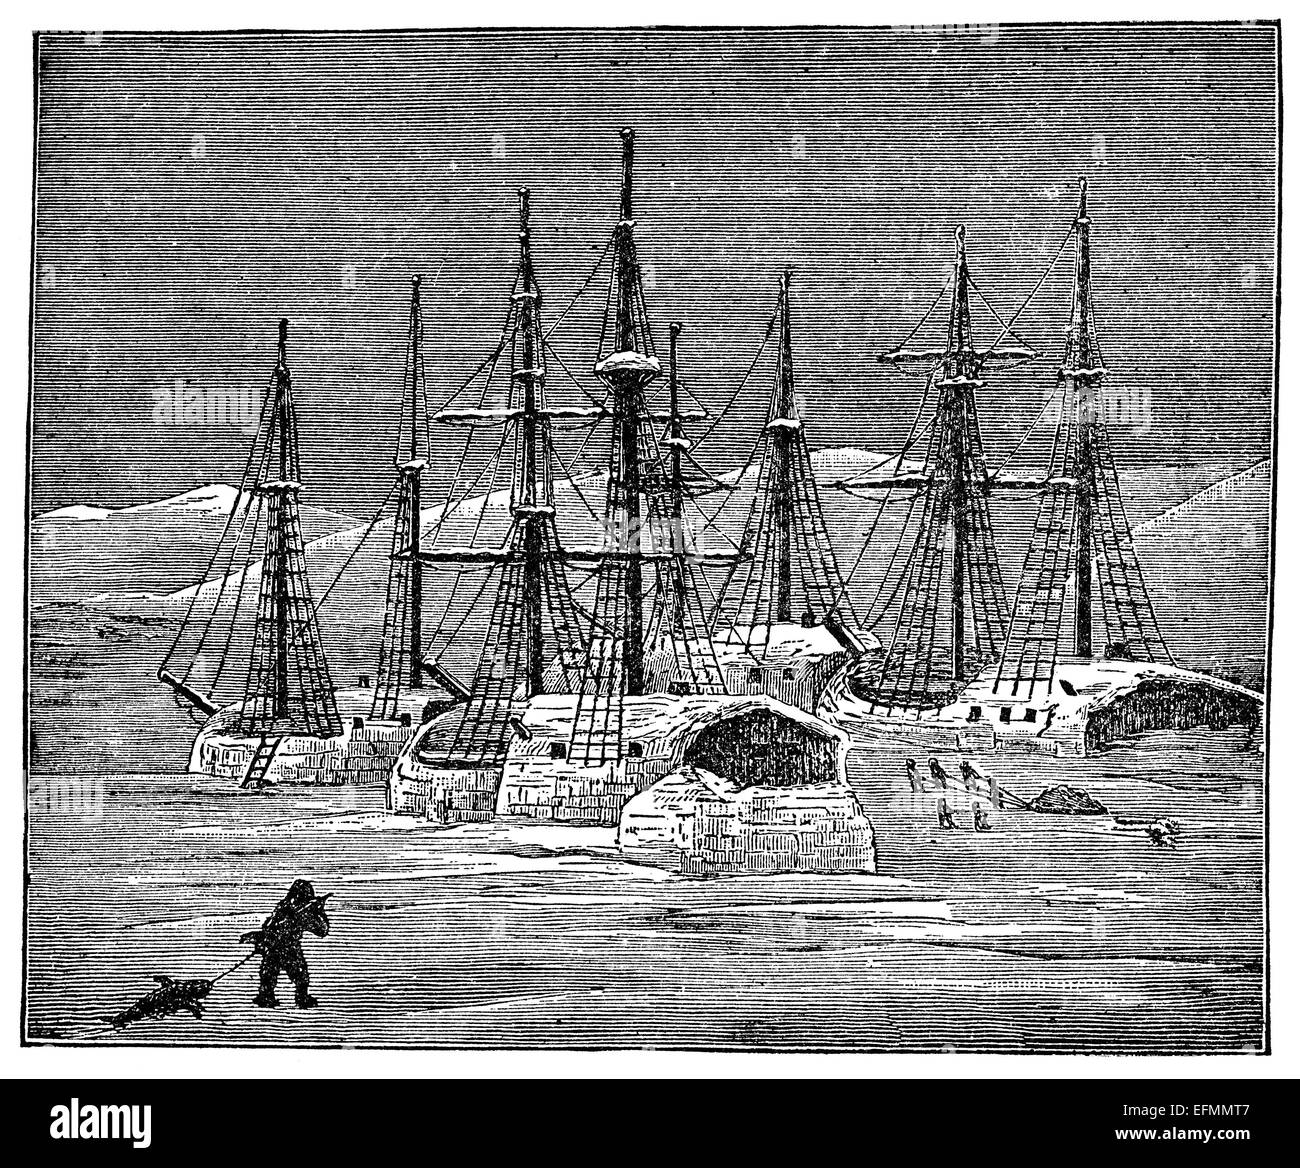 Gravure du xixe siècle d'un hiver arctique avec des navires pris dans la glace Banque D'Images